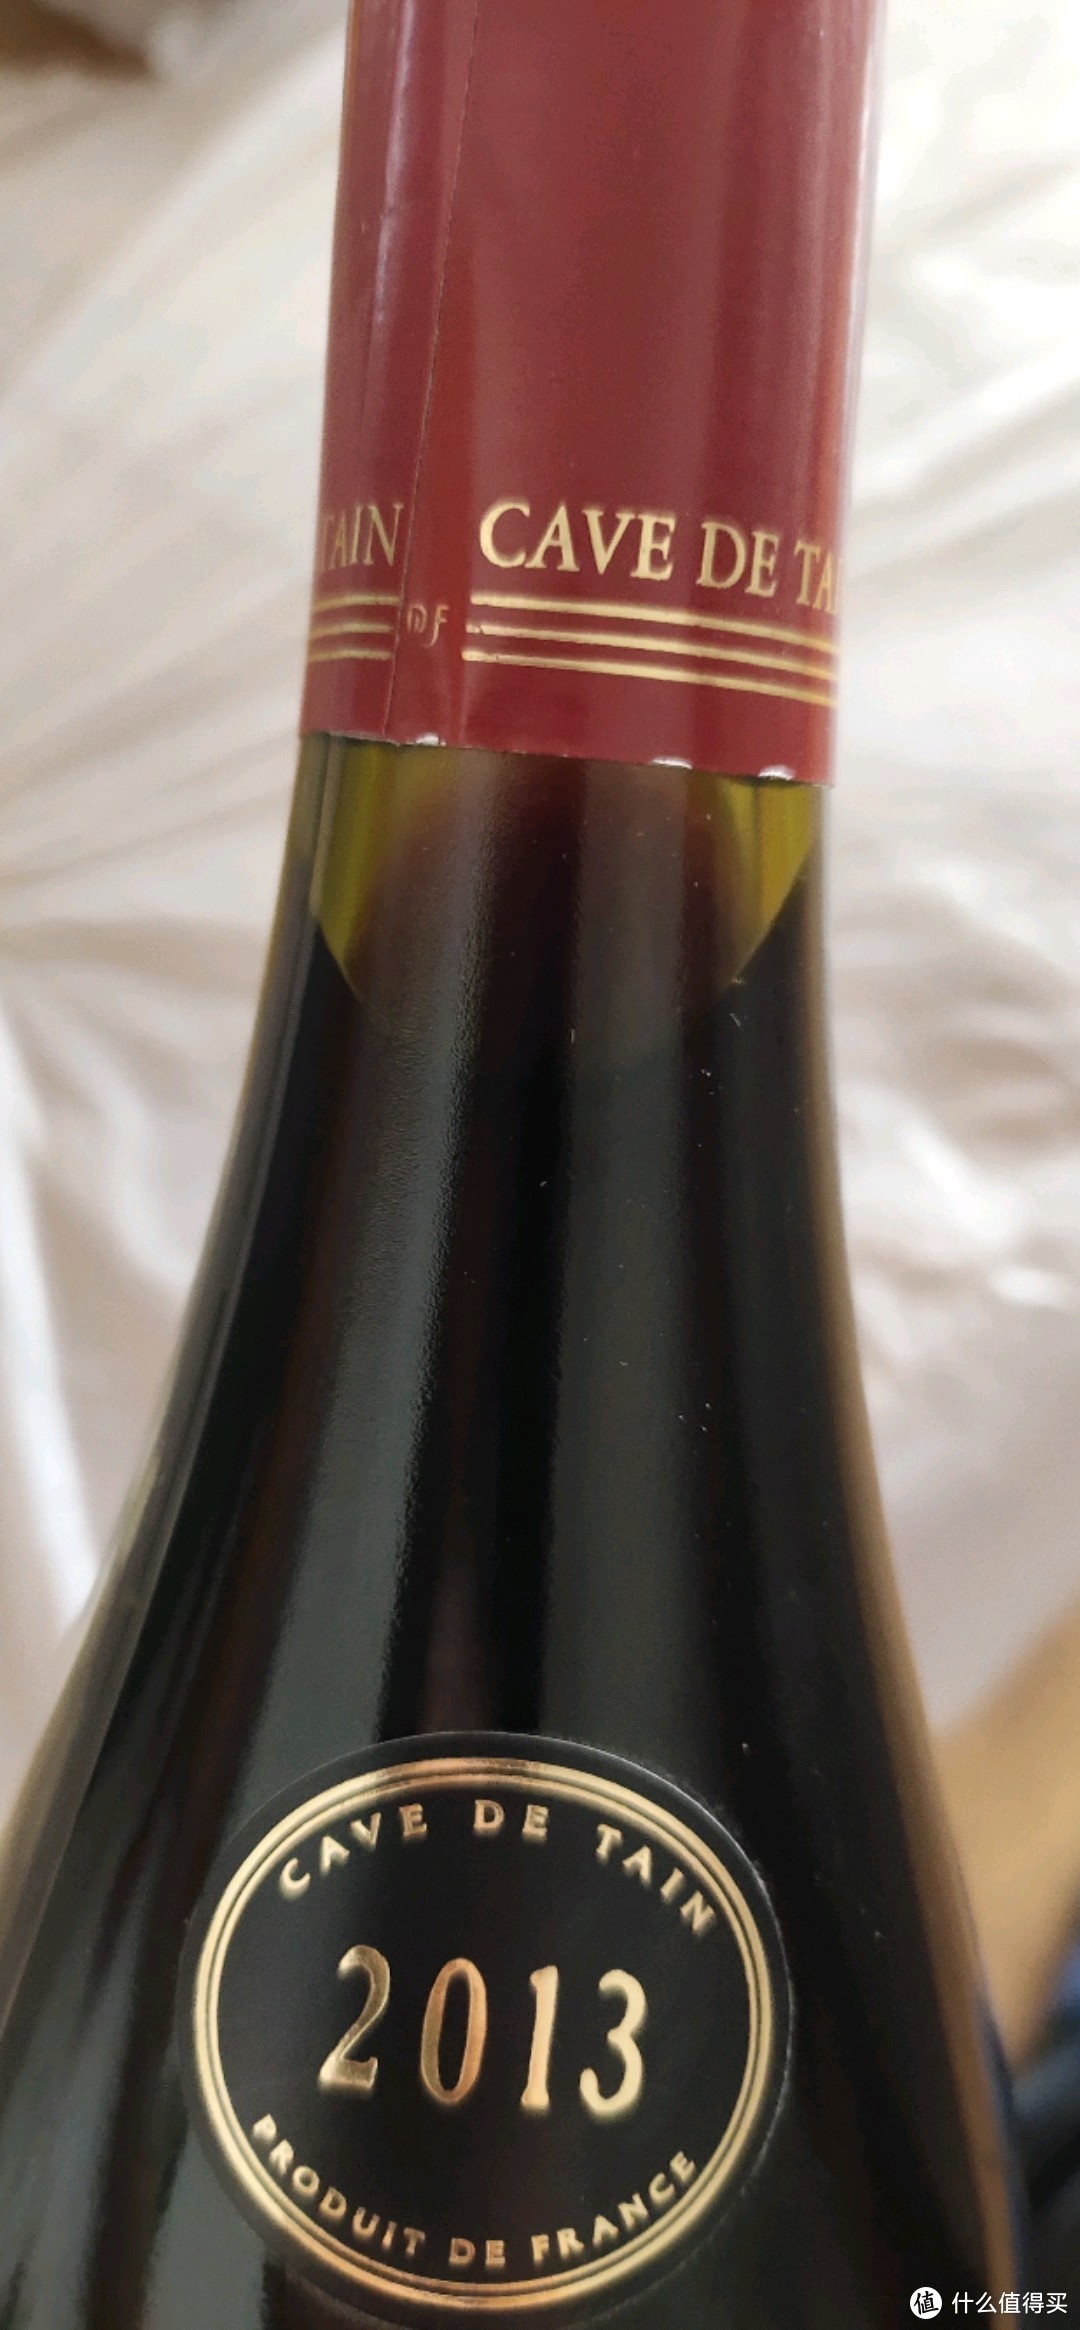 国内少见产区，来自北罗纳河谷埃米塔日产区单一品种西拉干红葡萄酒味道与南罗纳河谷混酿葡萄酒口味别样